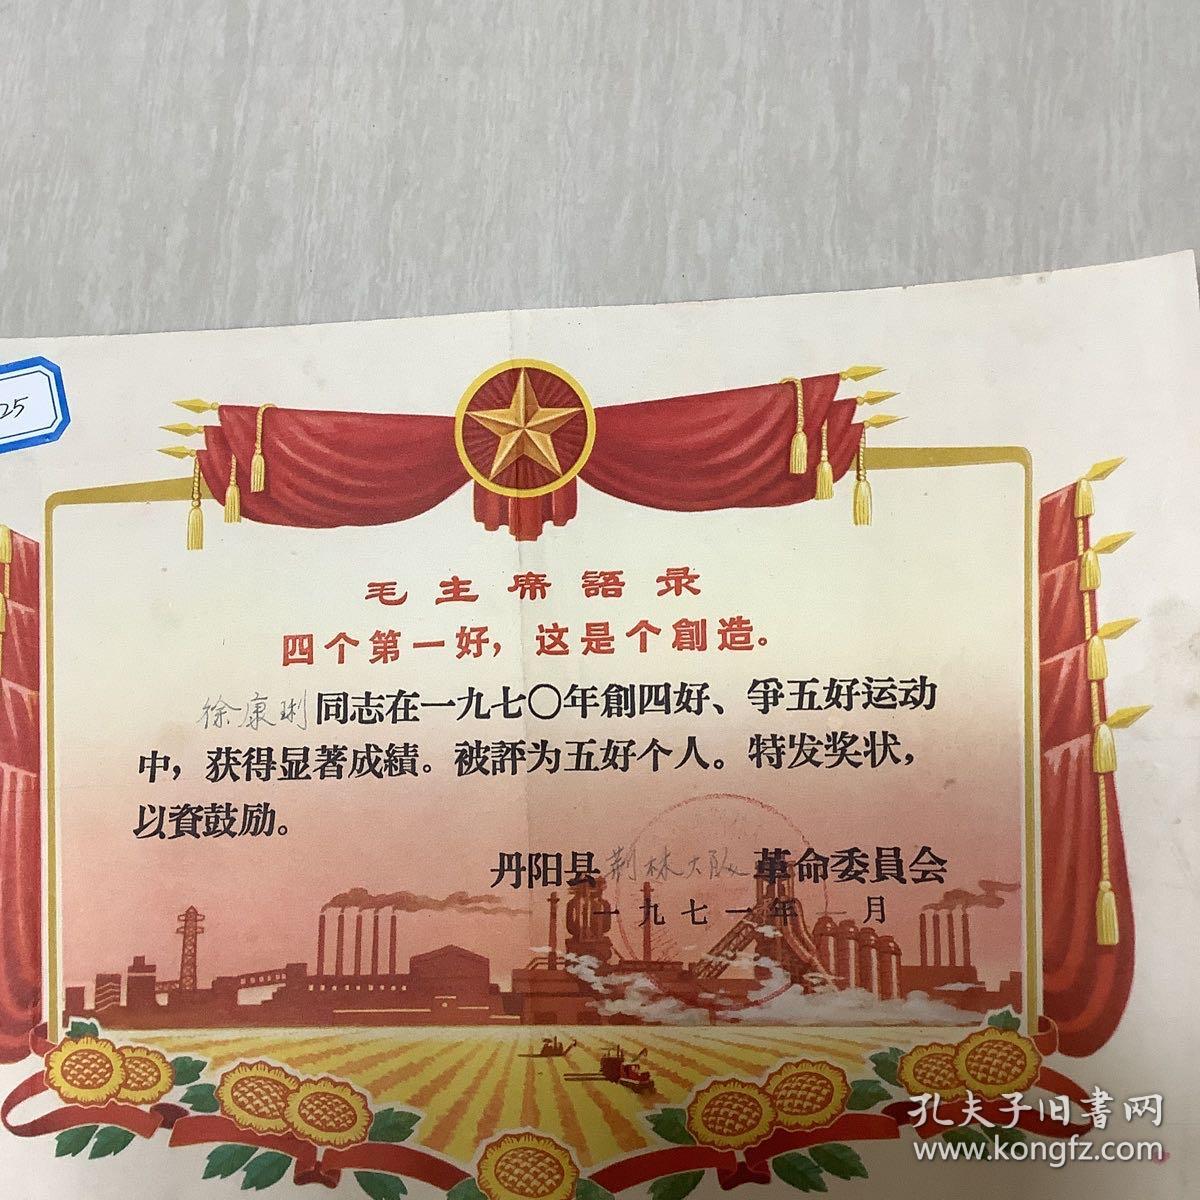 1971年 江苏丹阳县 荆林大队 革命委员会奖章。 徐康琍同志 被评为五好个人